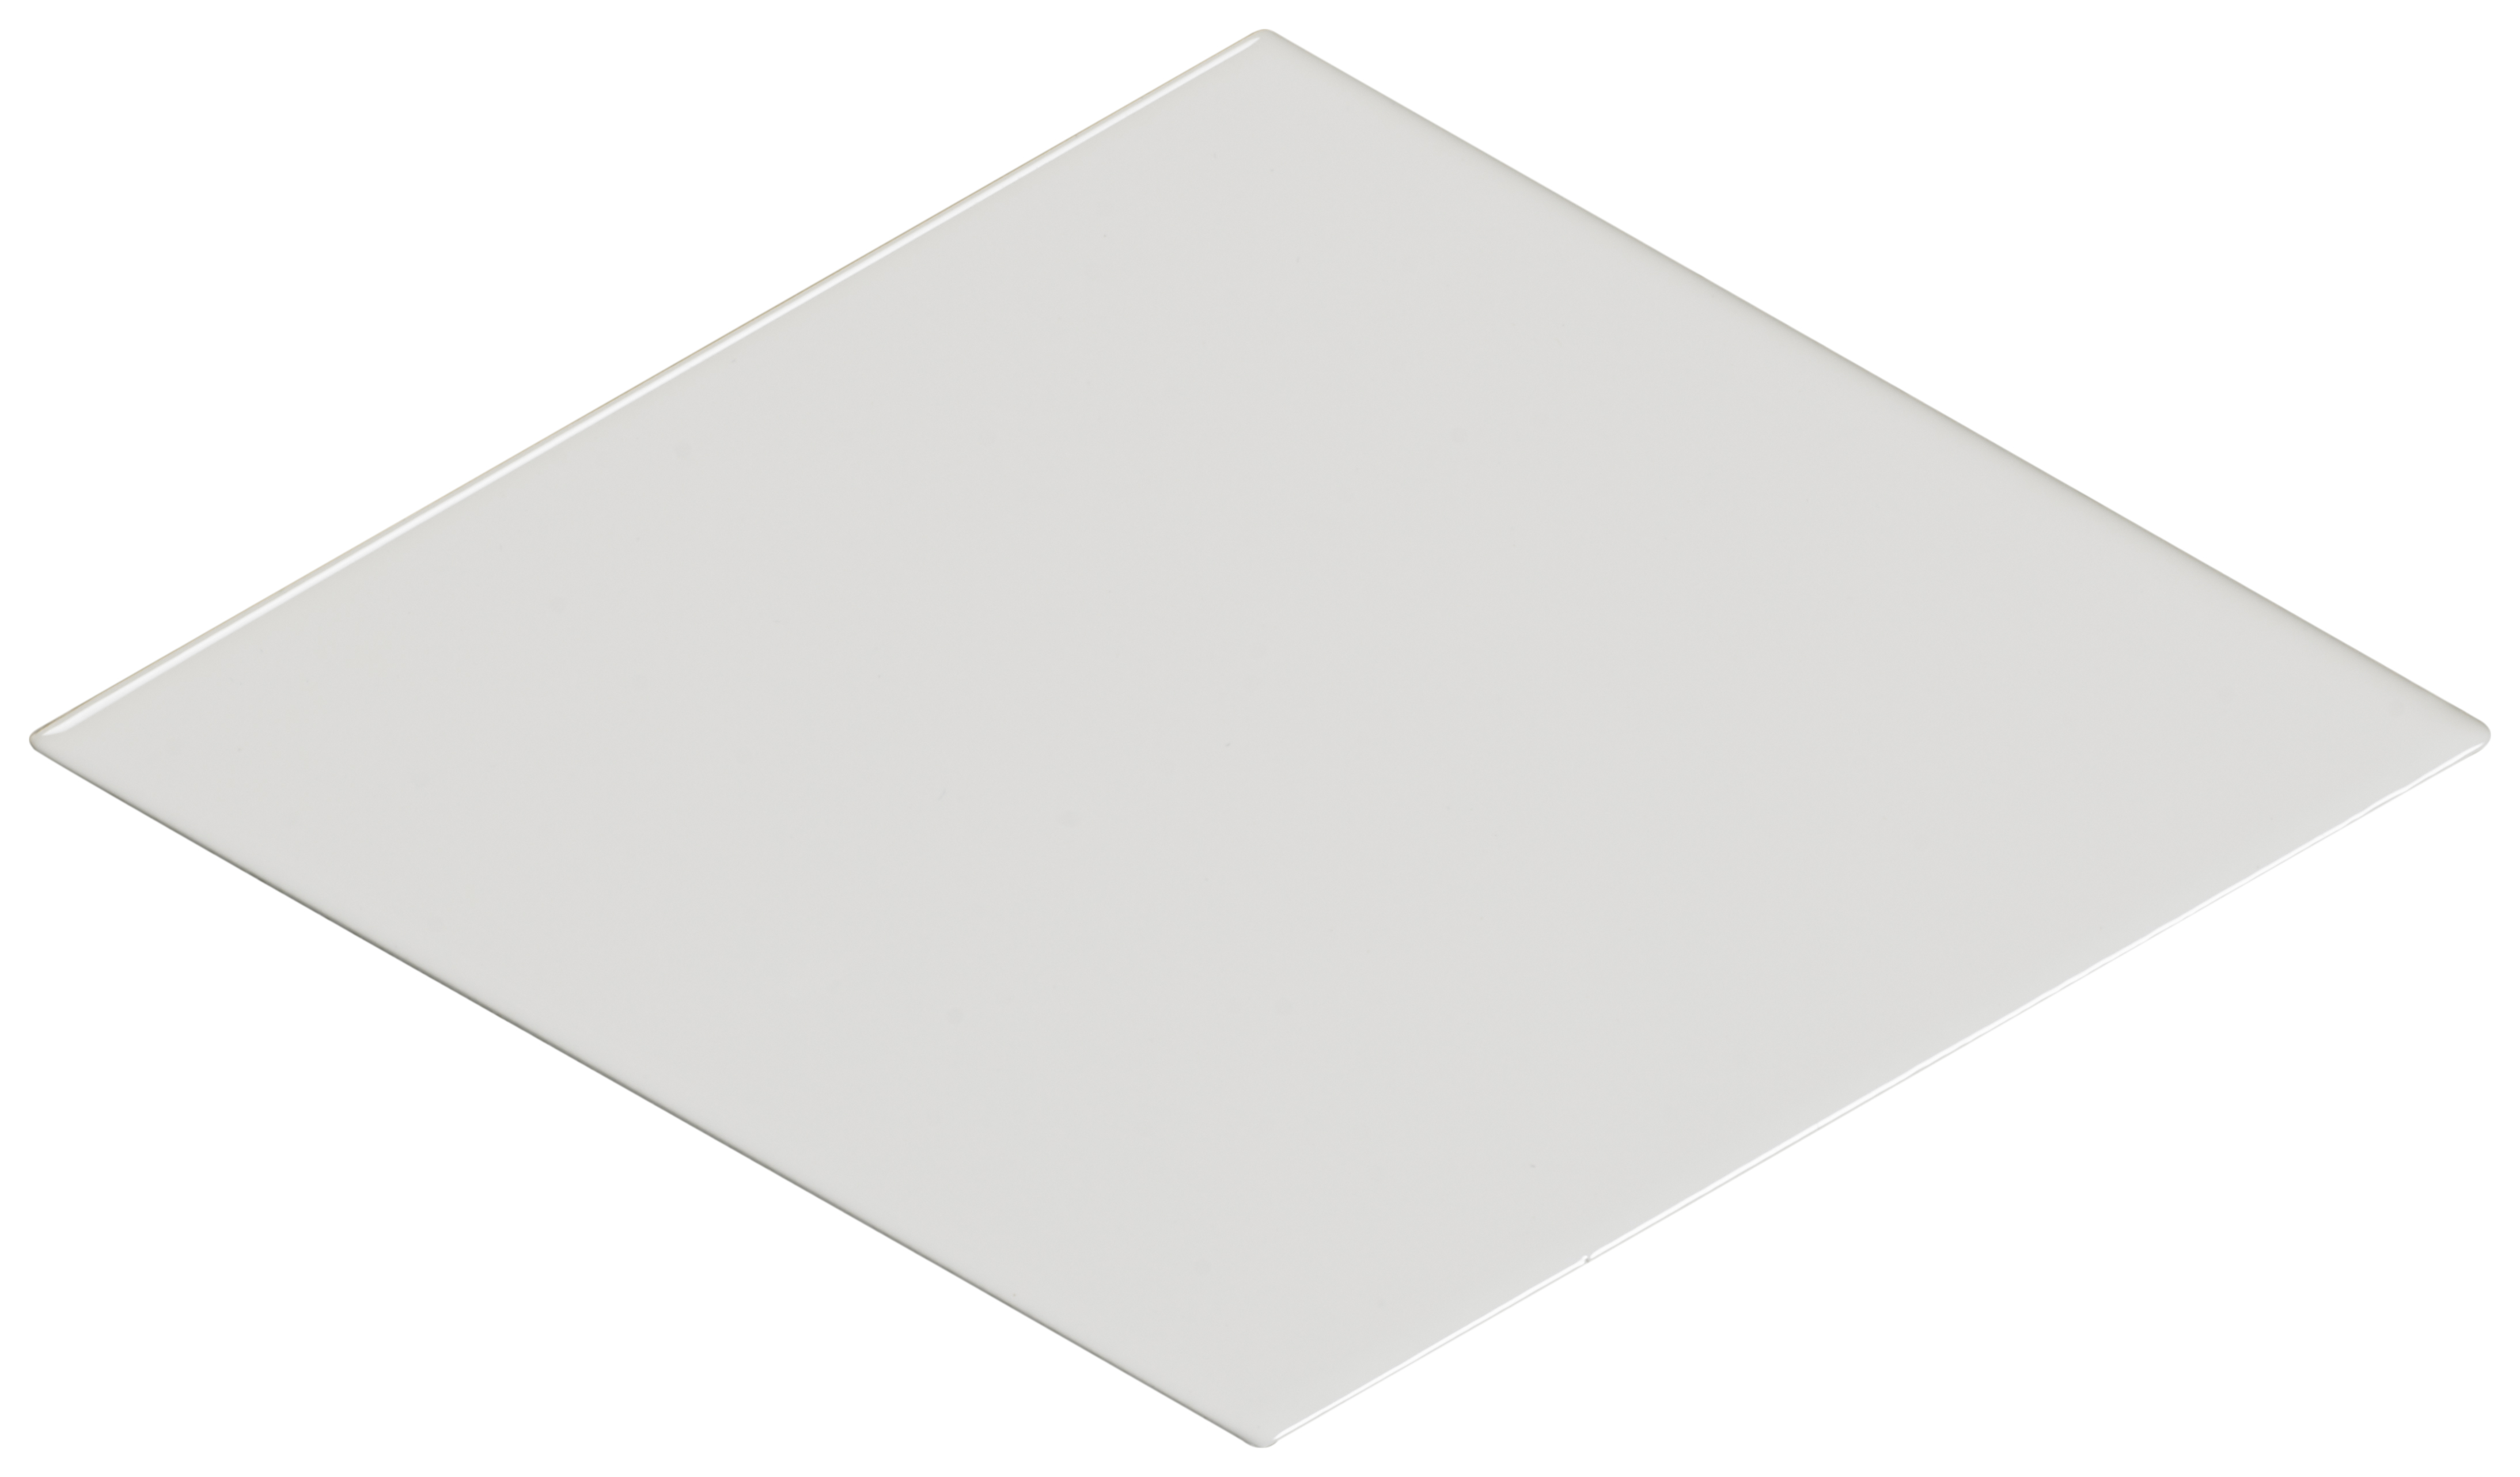 Wickes Boutique Lozenge White Gloss Ceramic Wall Tile - Cut Sample